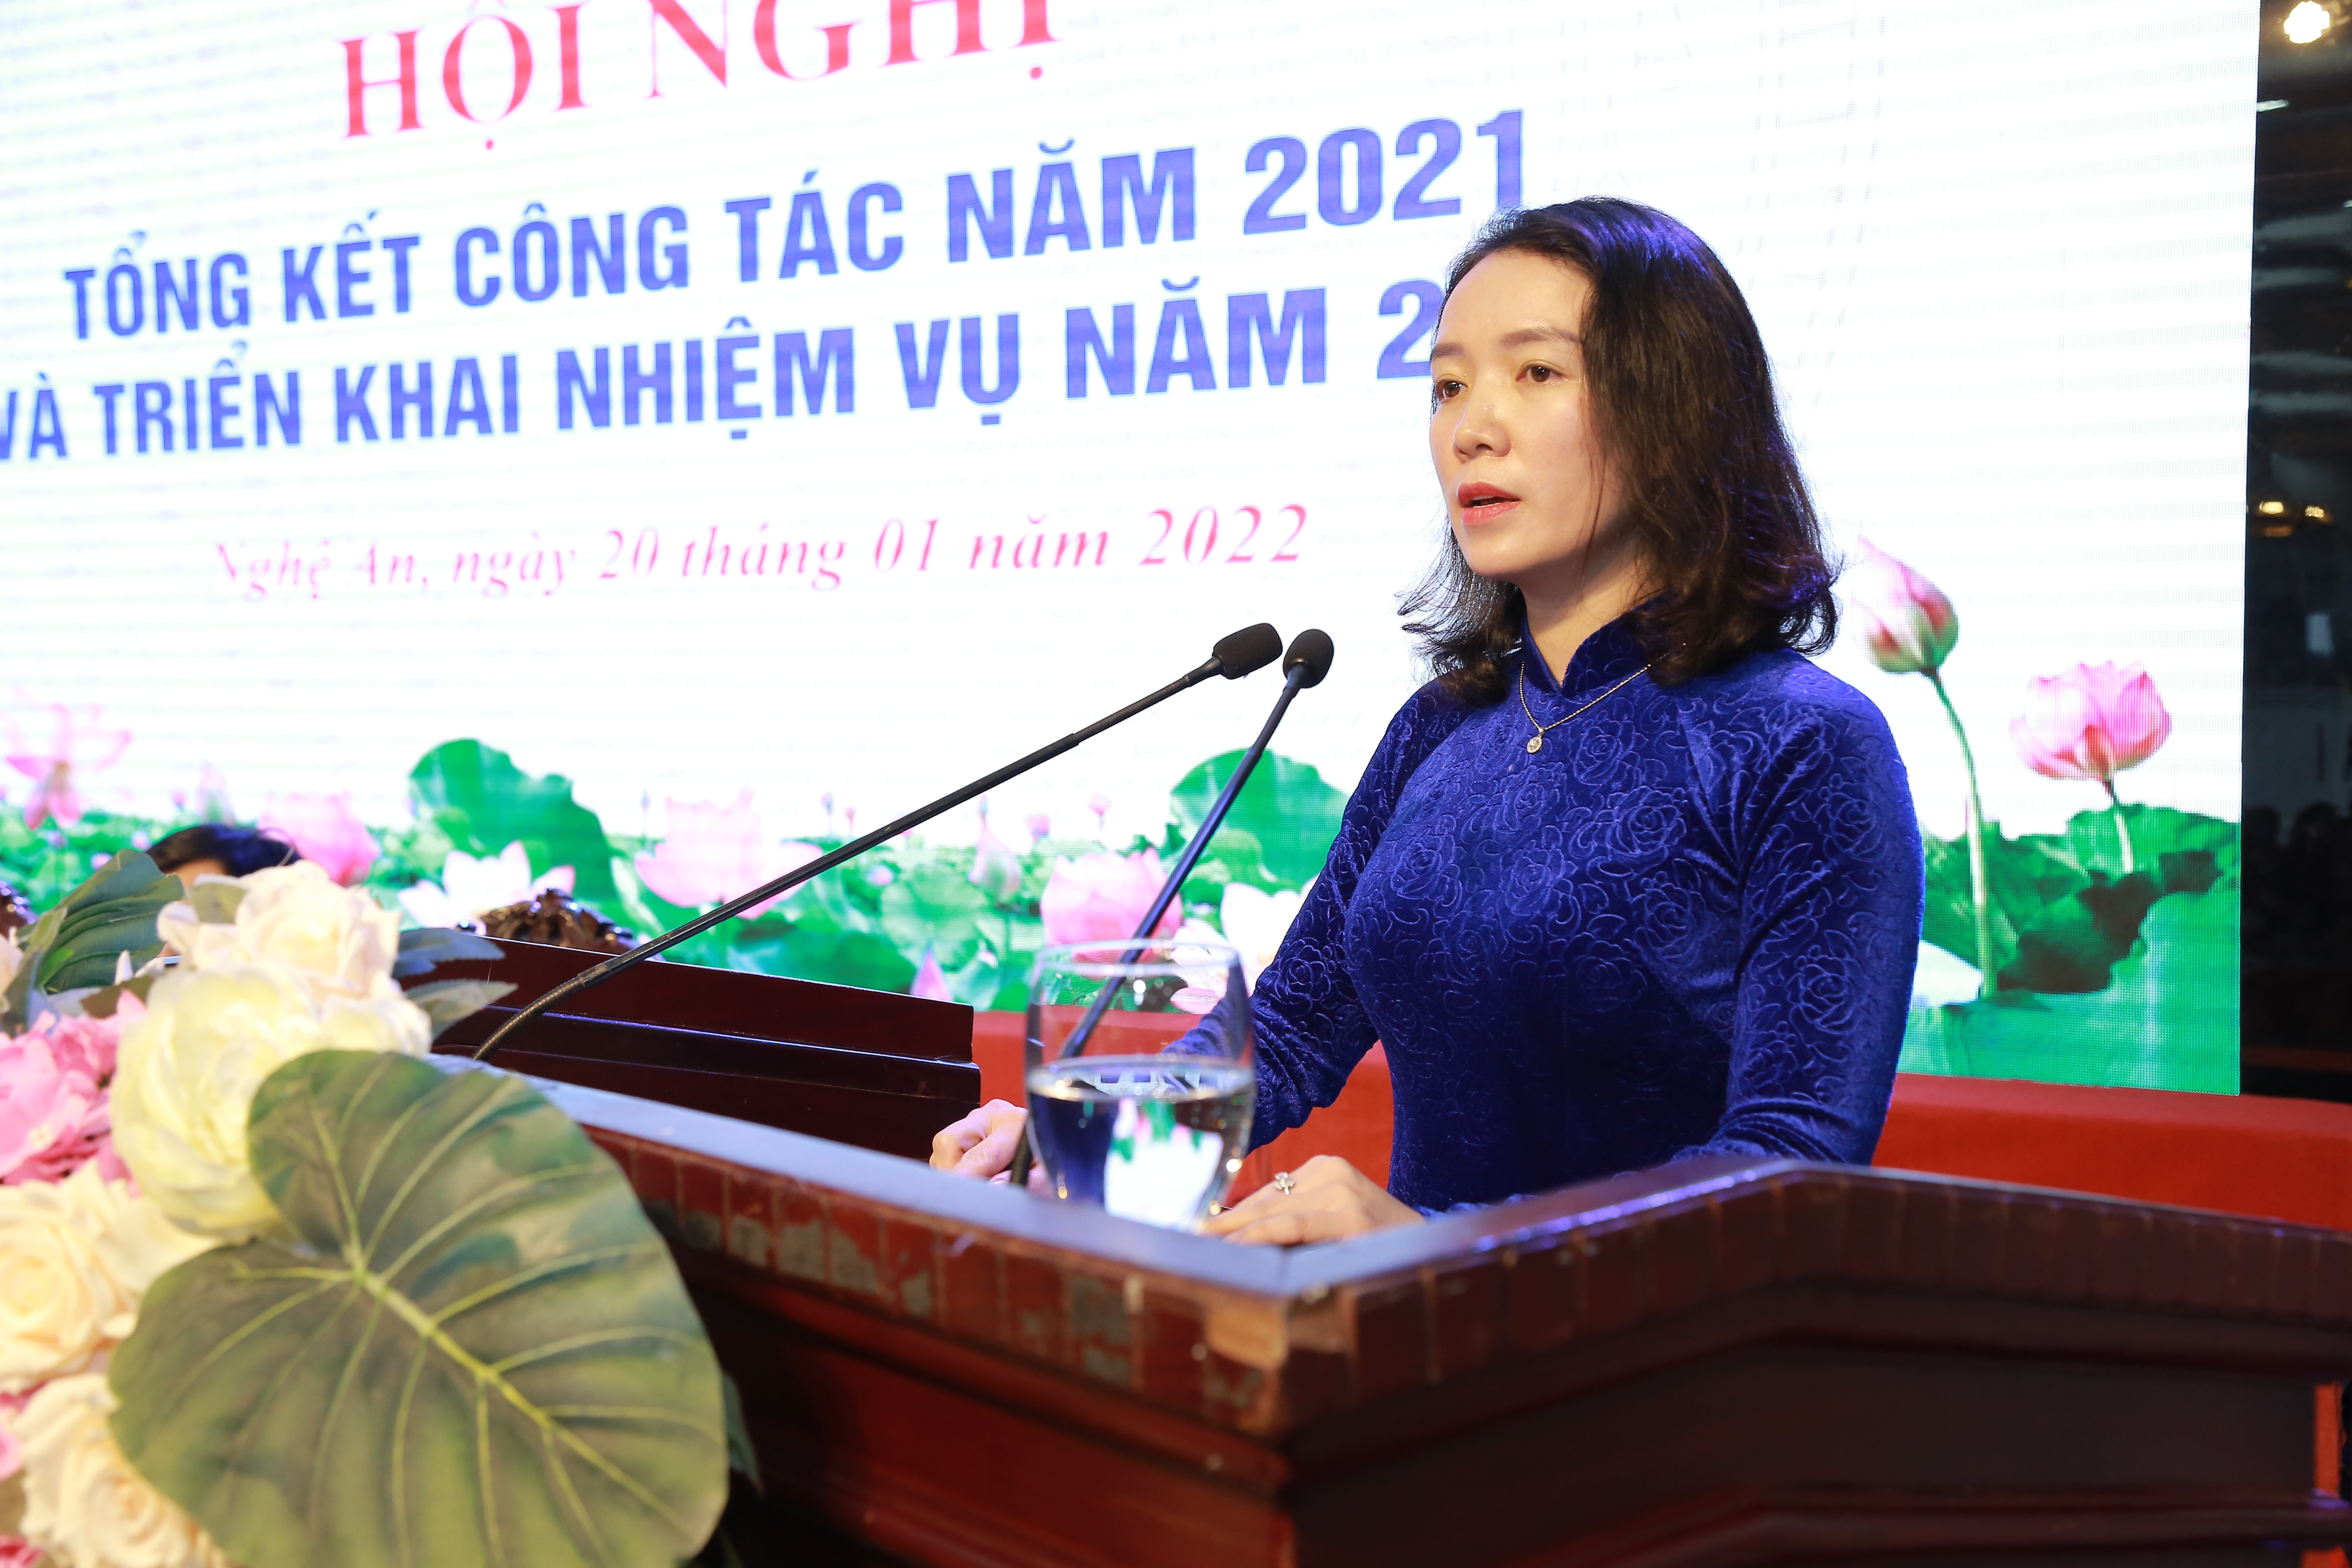 Đồng chí Trần Thị Mỹ Hạnh - Giám đốc Sở Văn hóa và Thể thao phát biểu tại hội nghị. Ảnh: Đình Tuyên